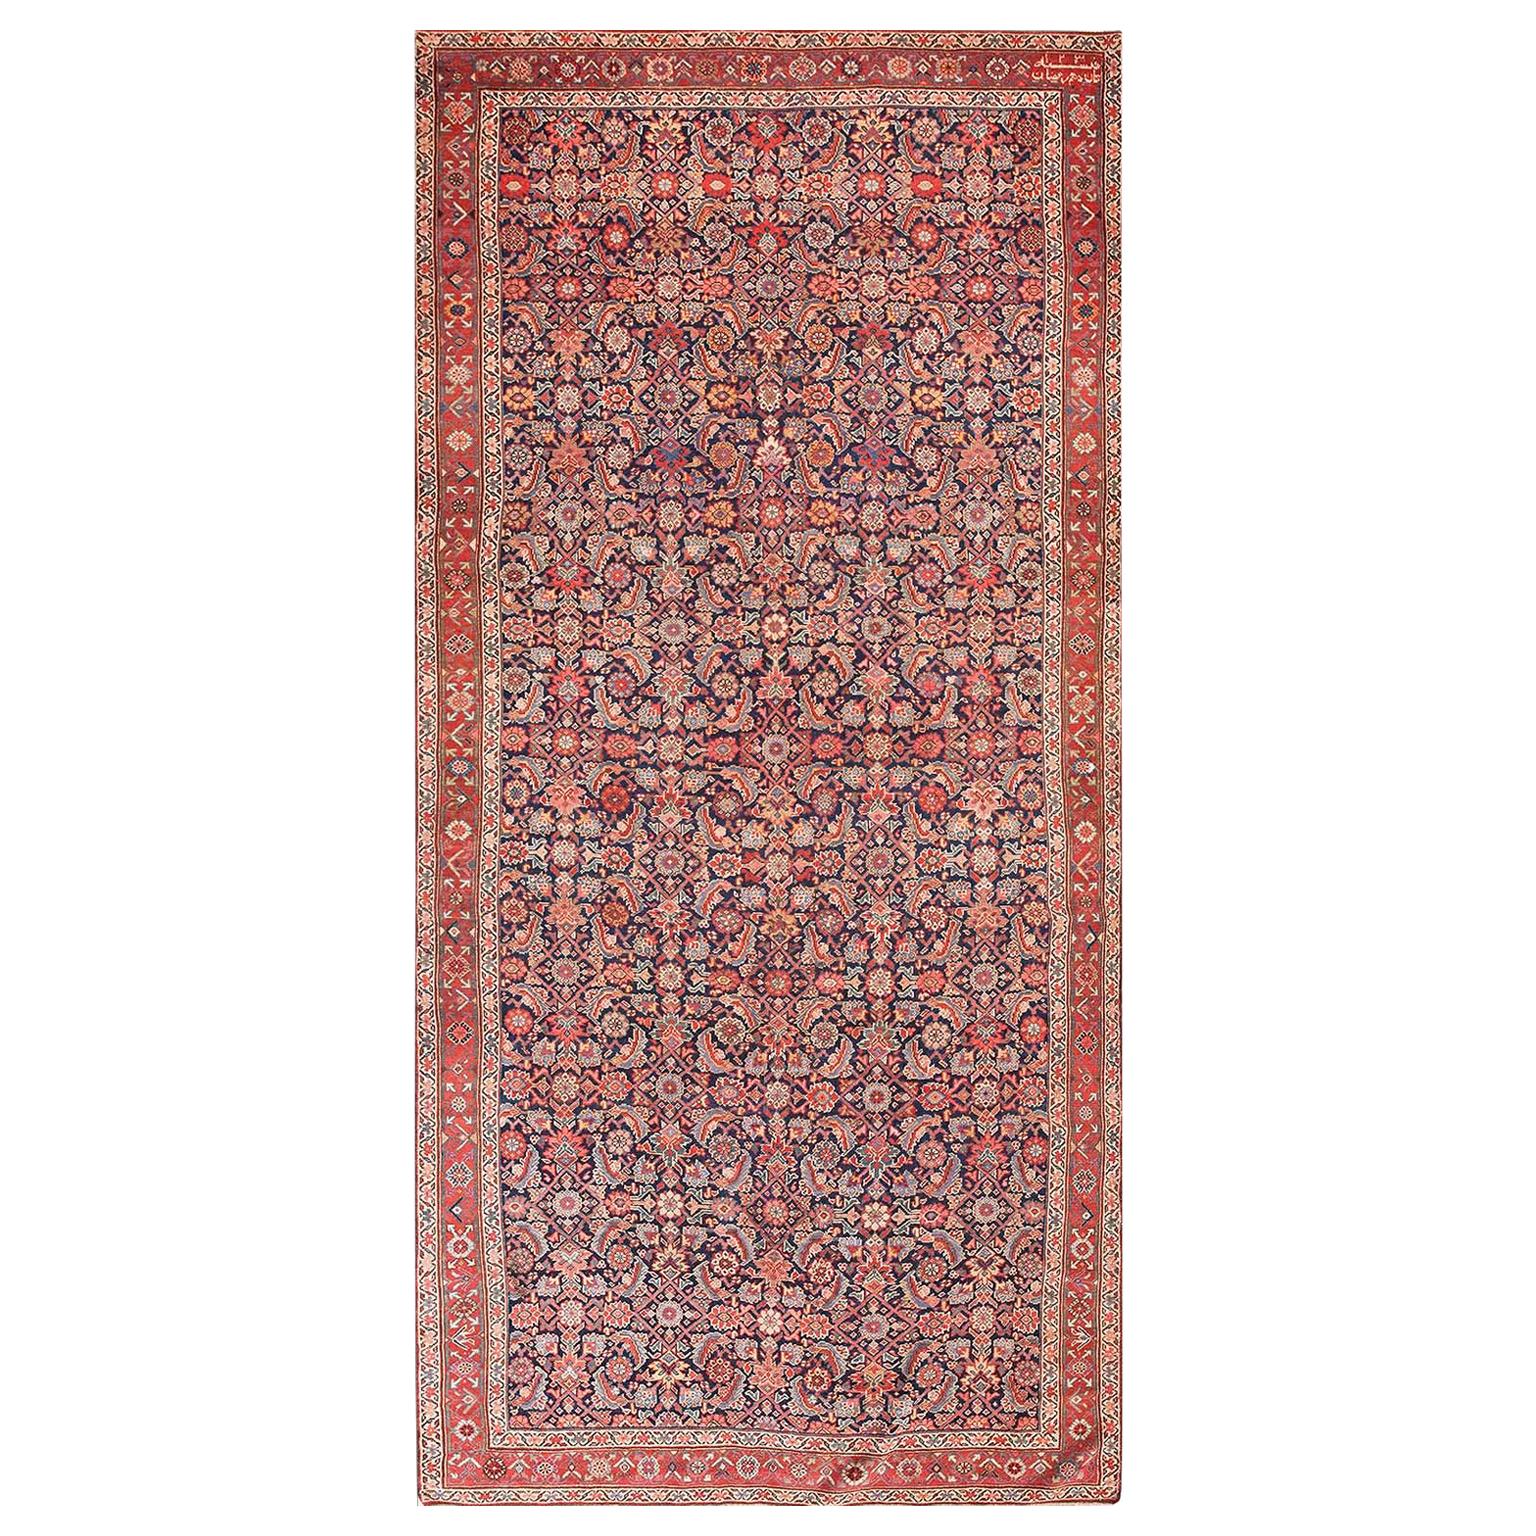 Anfang des 19. Jahrhunderts N.W. Persischer Teppich aus dem Jahr 1814 ( 5'6" x 11'2" - 168 x 340)